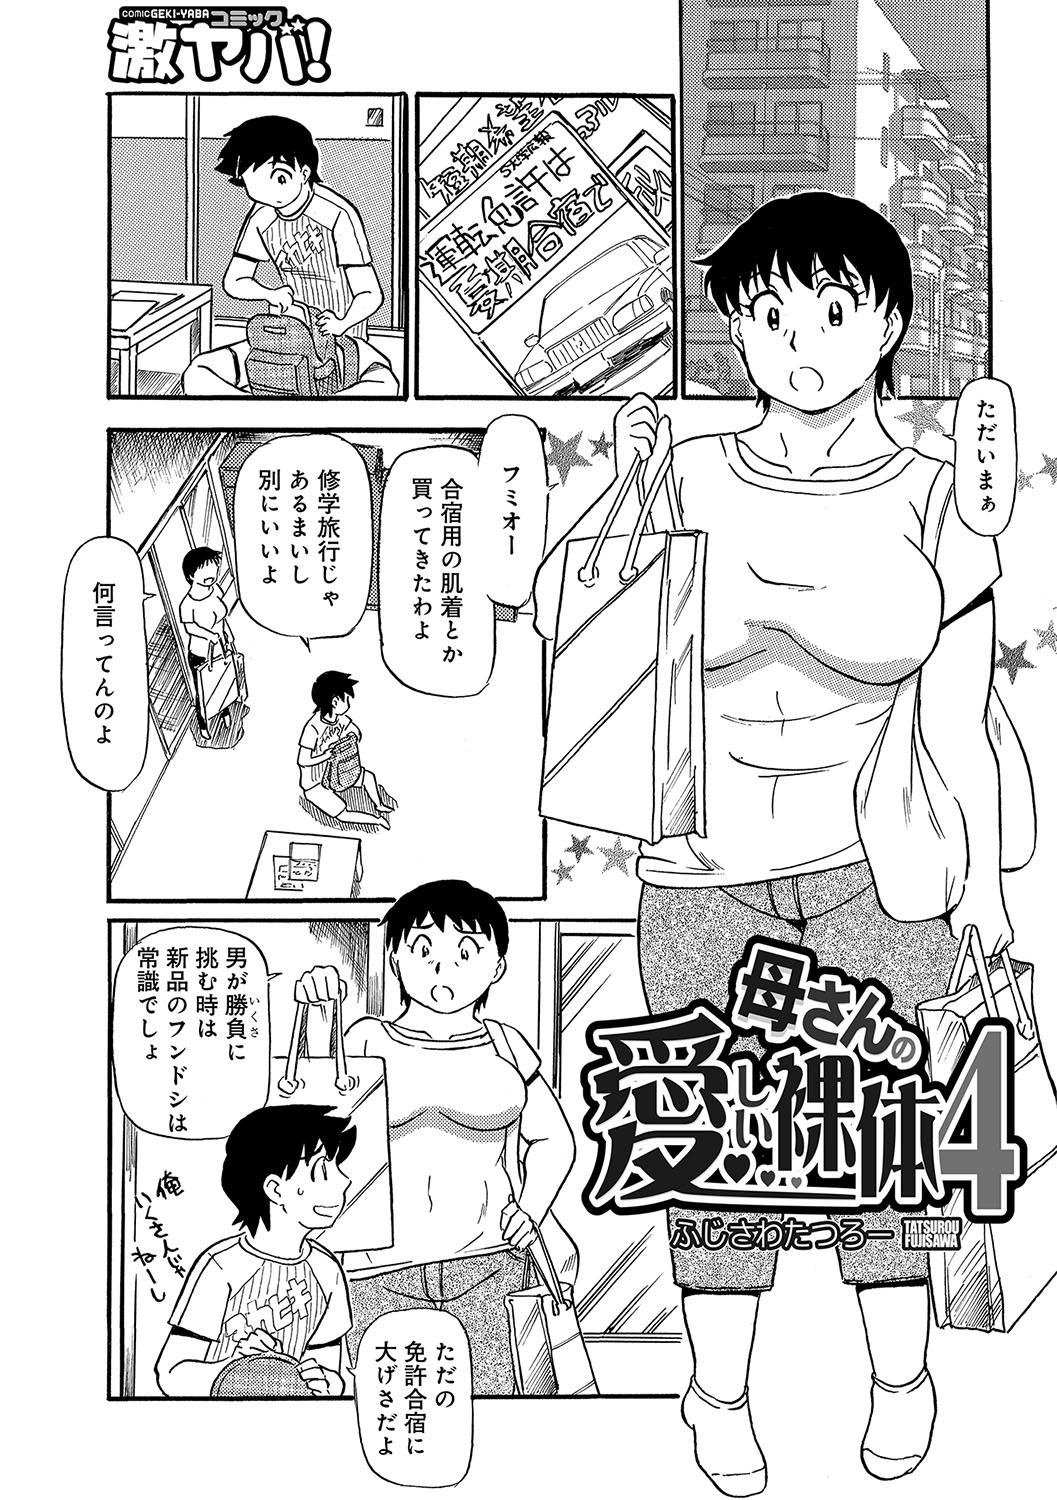 WEB Han Comic Geki Yaba! Vol.96 17